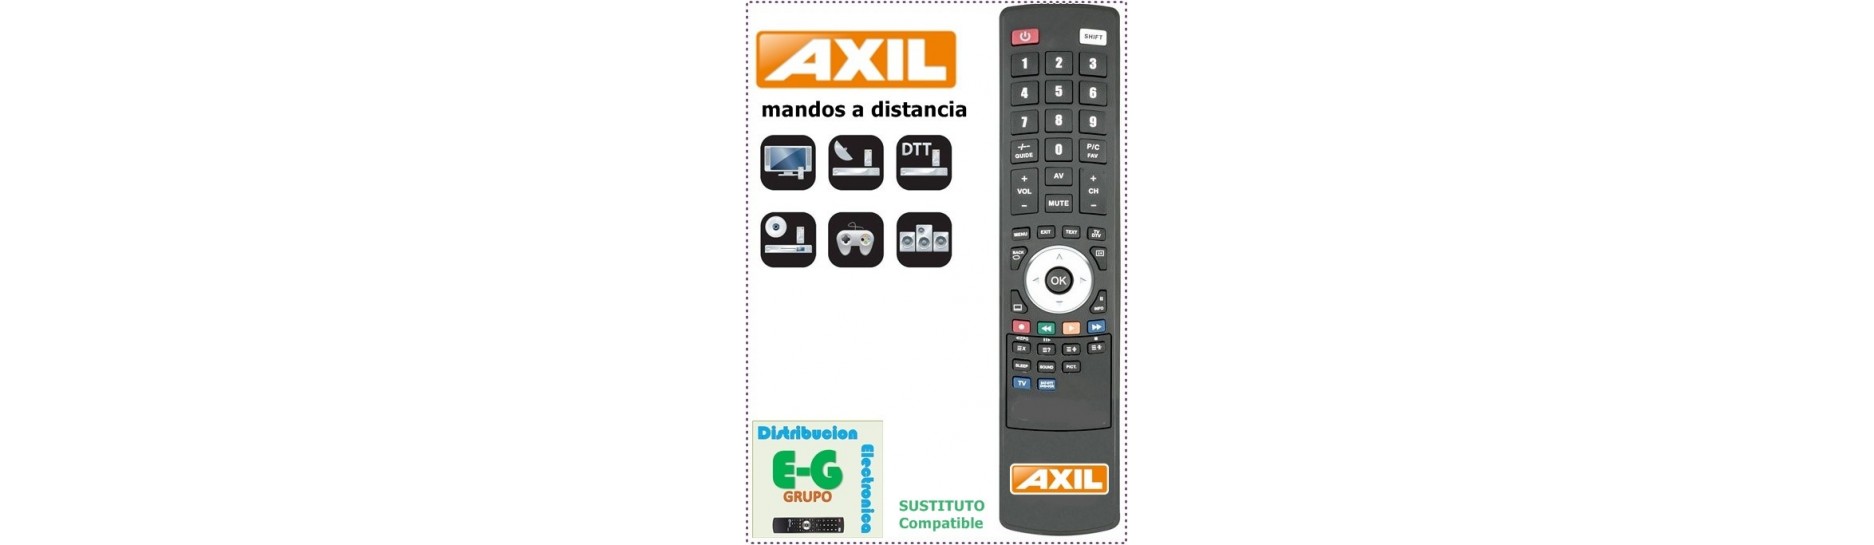 AXIL Mando para Televisión | Comprar Mando AXIL para Televisión